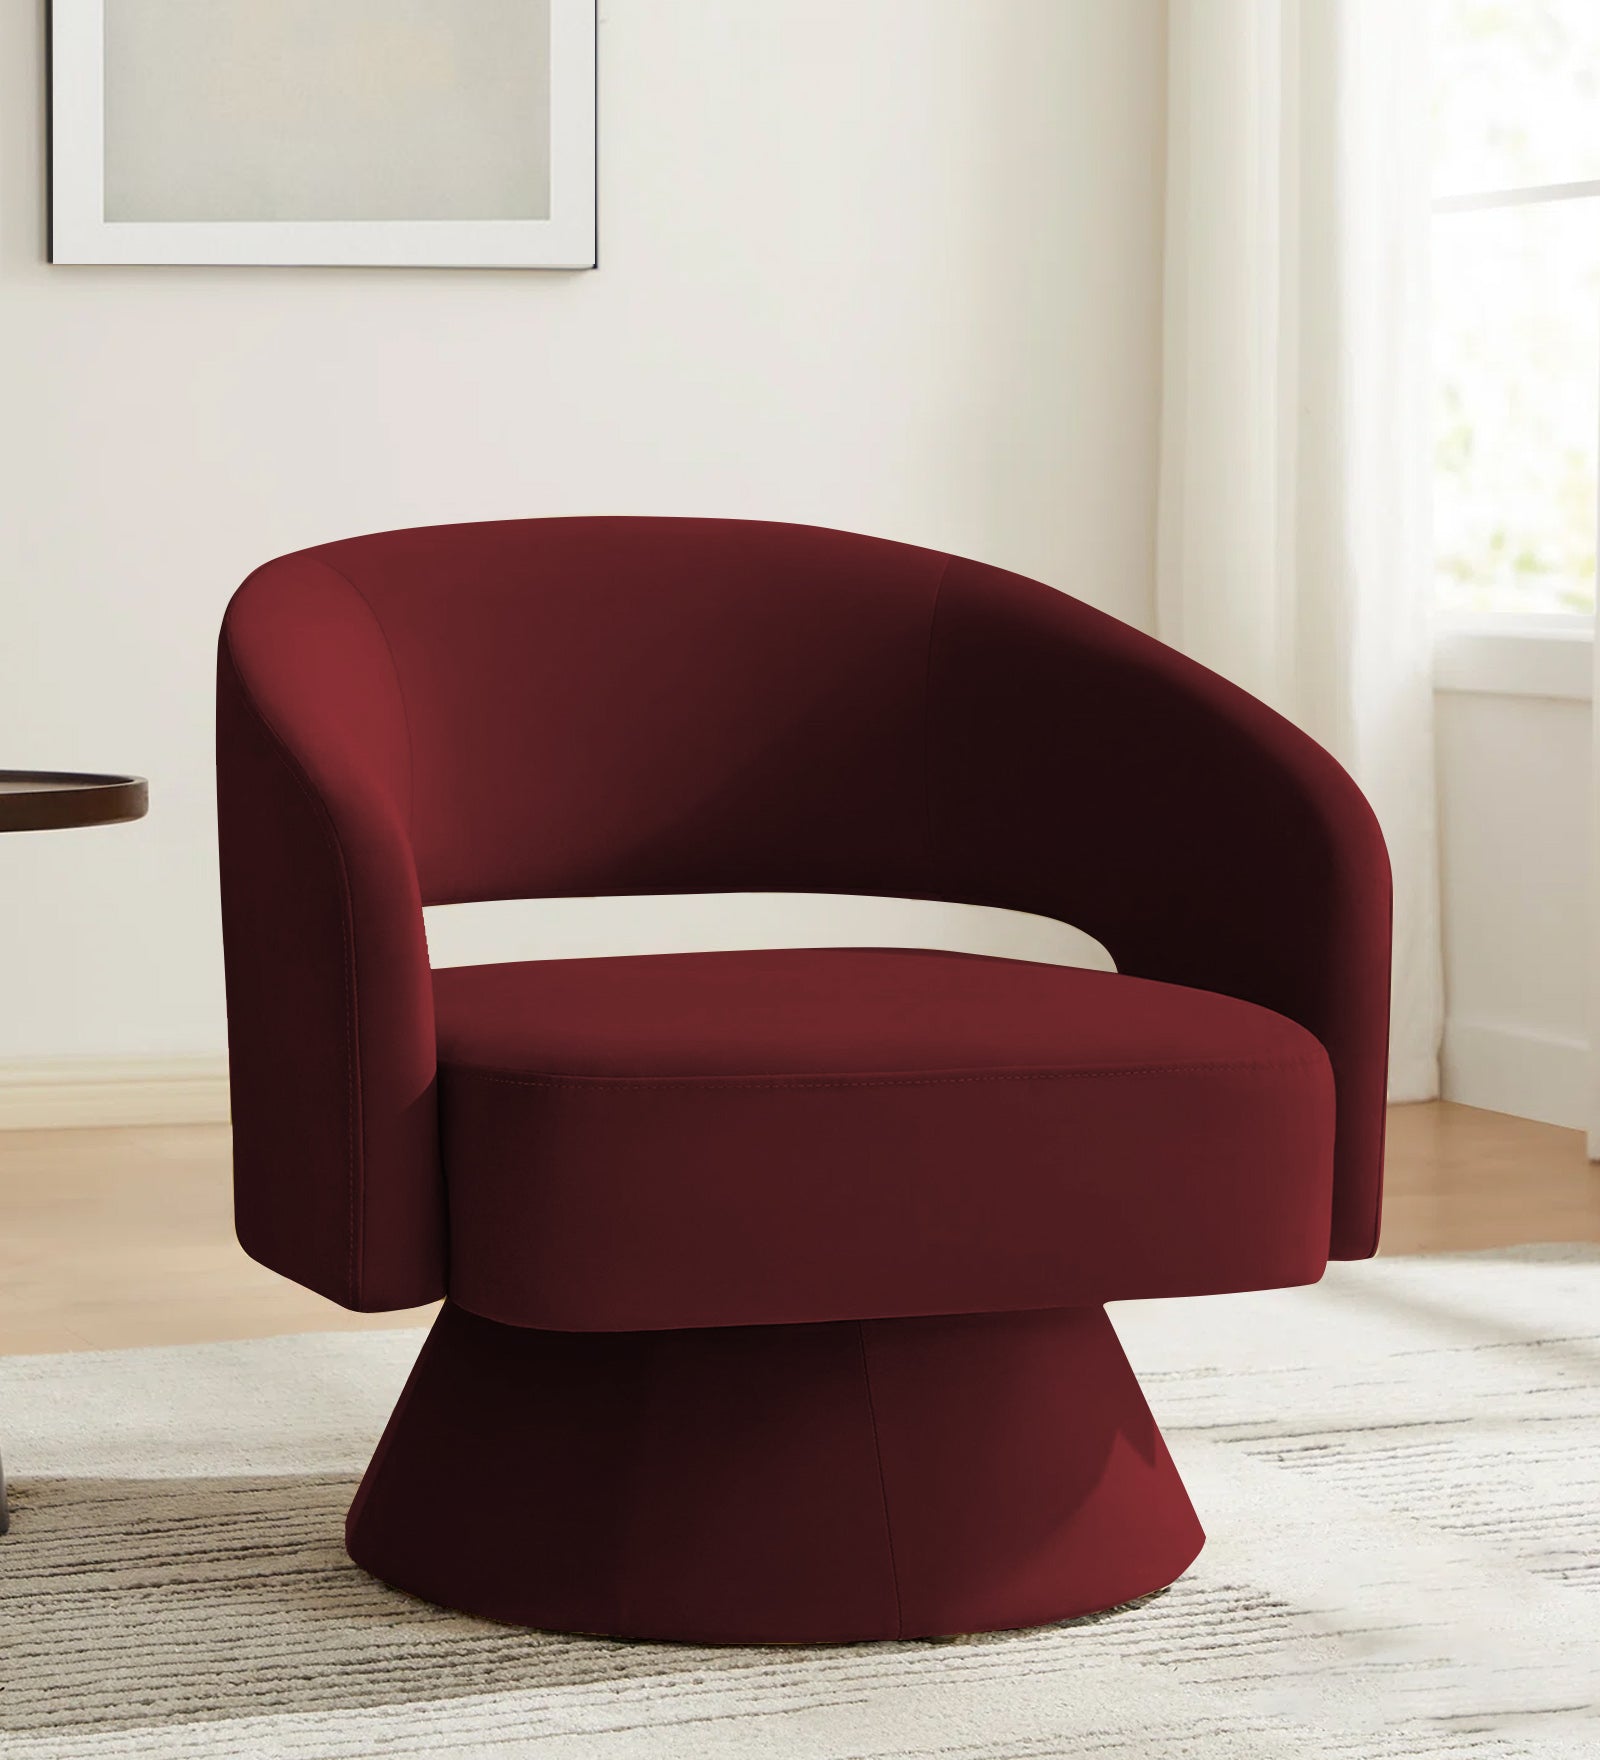 Pendra Velvet Swivel Chair in Dark Maroon Colour